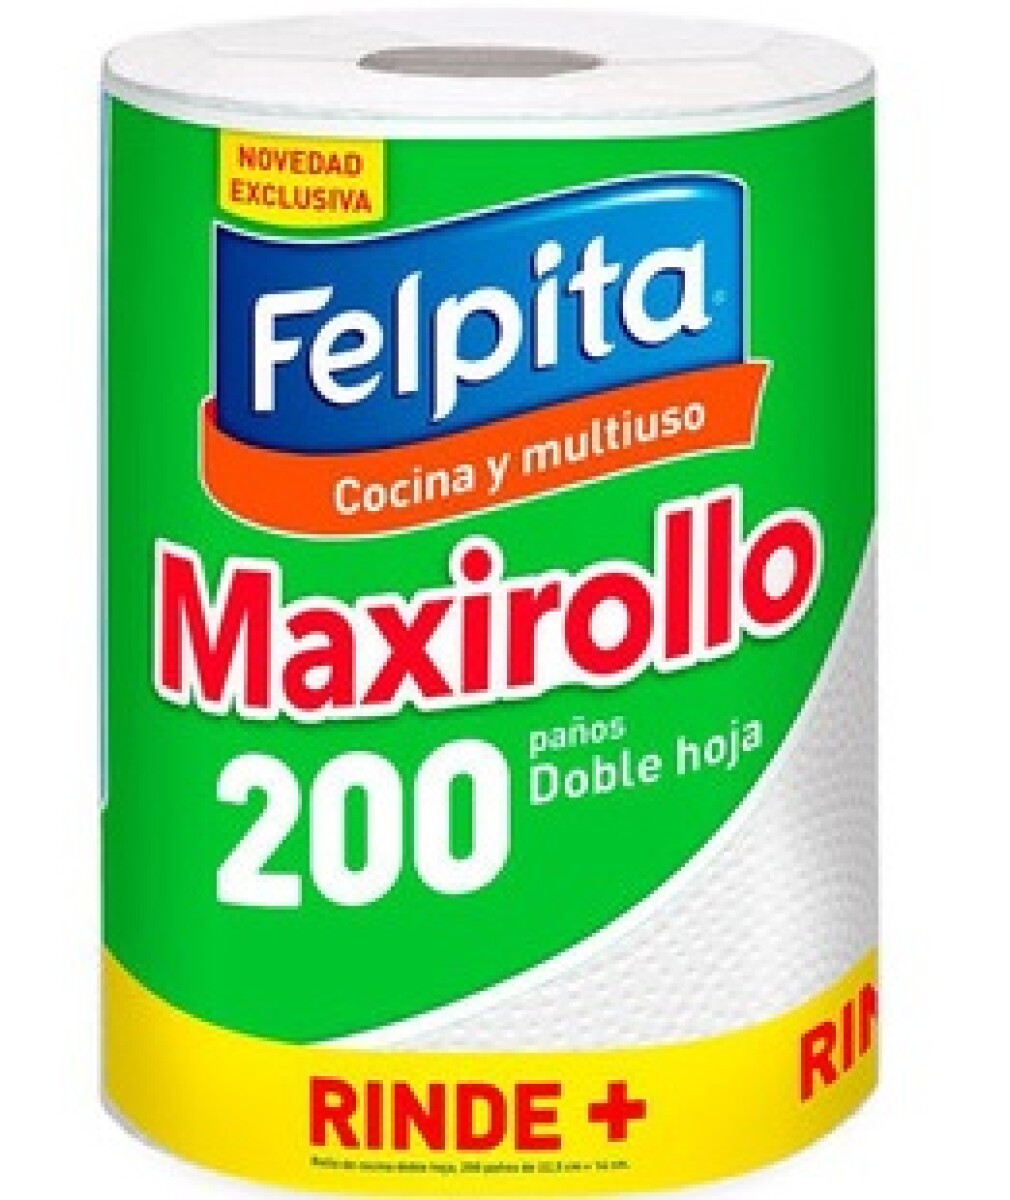 TOALLA DE COCINA FELPITA MAXIROLLO 200 PAÑOS 